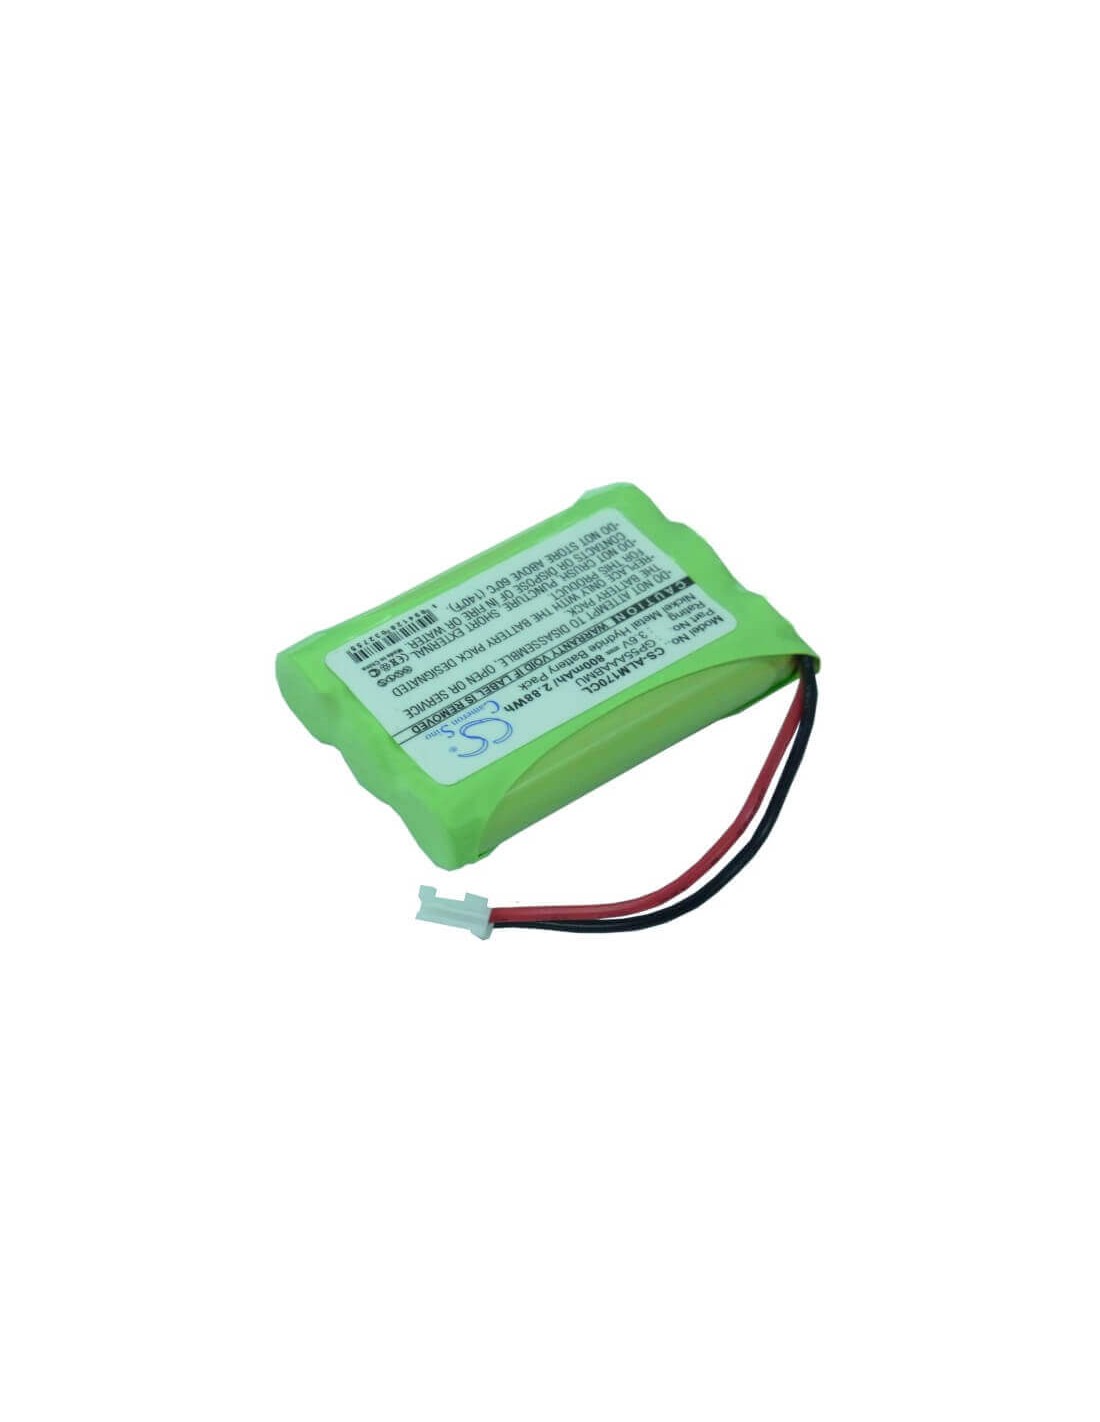 Battery for Betacom, Bc400 3.6V, 800mAh - 2.88Wh